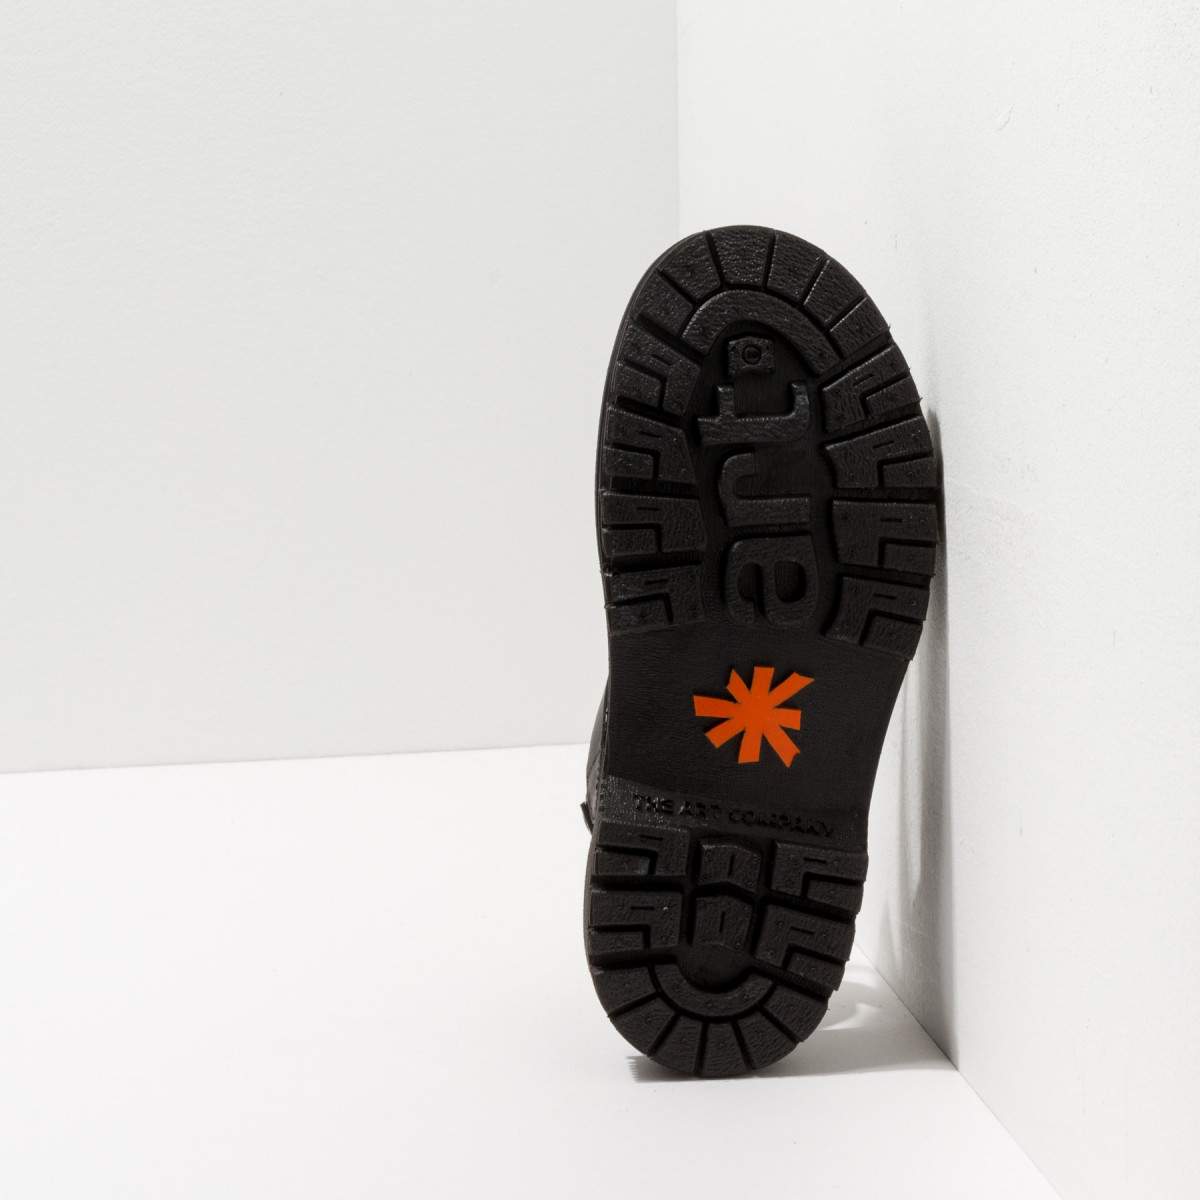 Sandales en cuir et semelle ultra confort - Noir - art